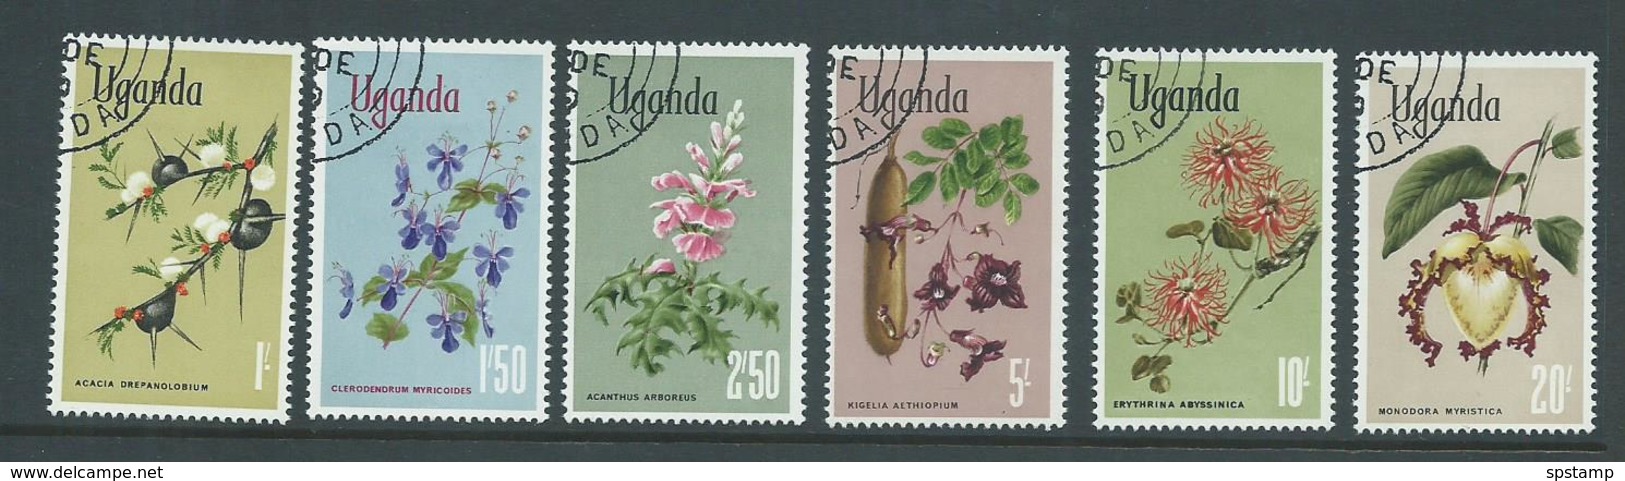 Uganda 1969 Flowers 1 Shilling To 20 Shillings FU - Uganda (1962-...)